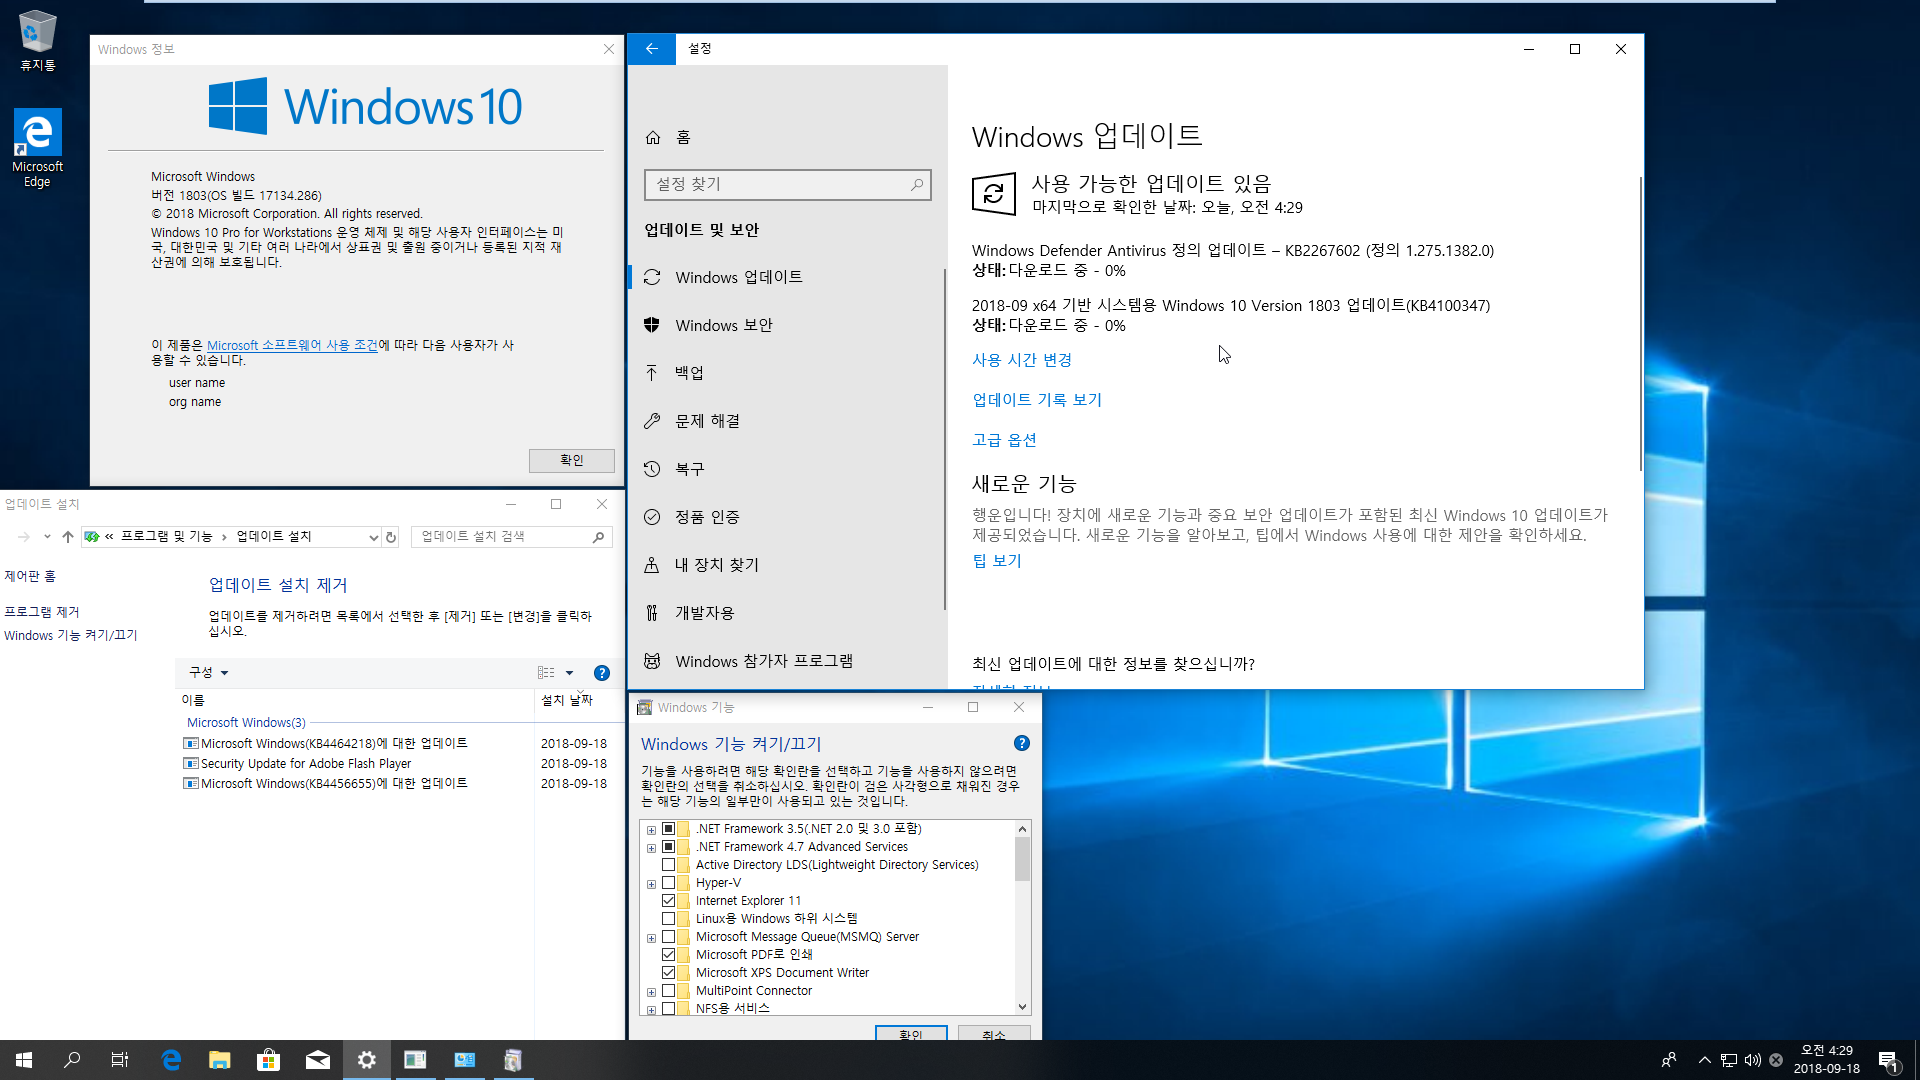 2018년 9월 18일 수시 업데이트 나왔네요 - Windows 10 버전1803 누적 업데이트 KB4464218 (OS 빌드 17134.286) 통합중 입니다 2018-09-18_042939.png